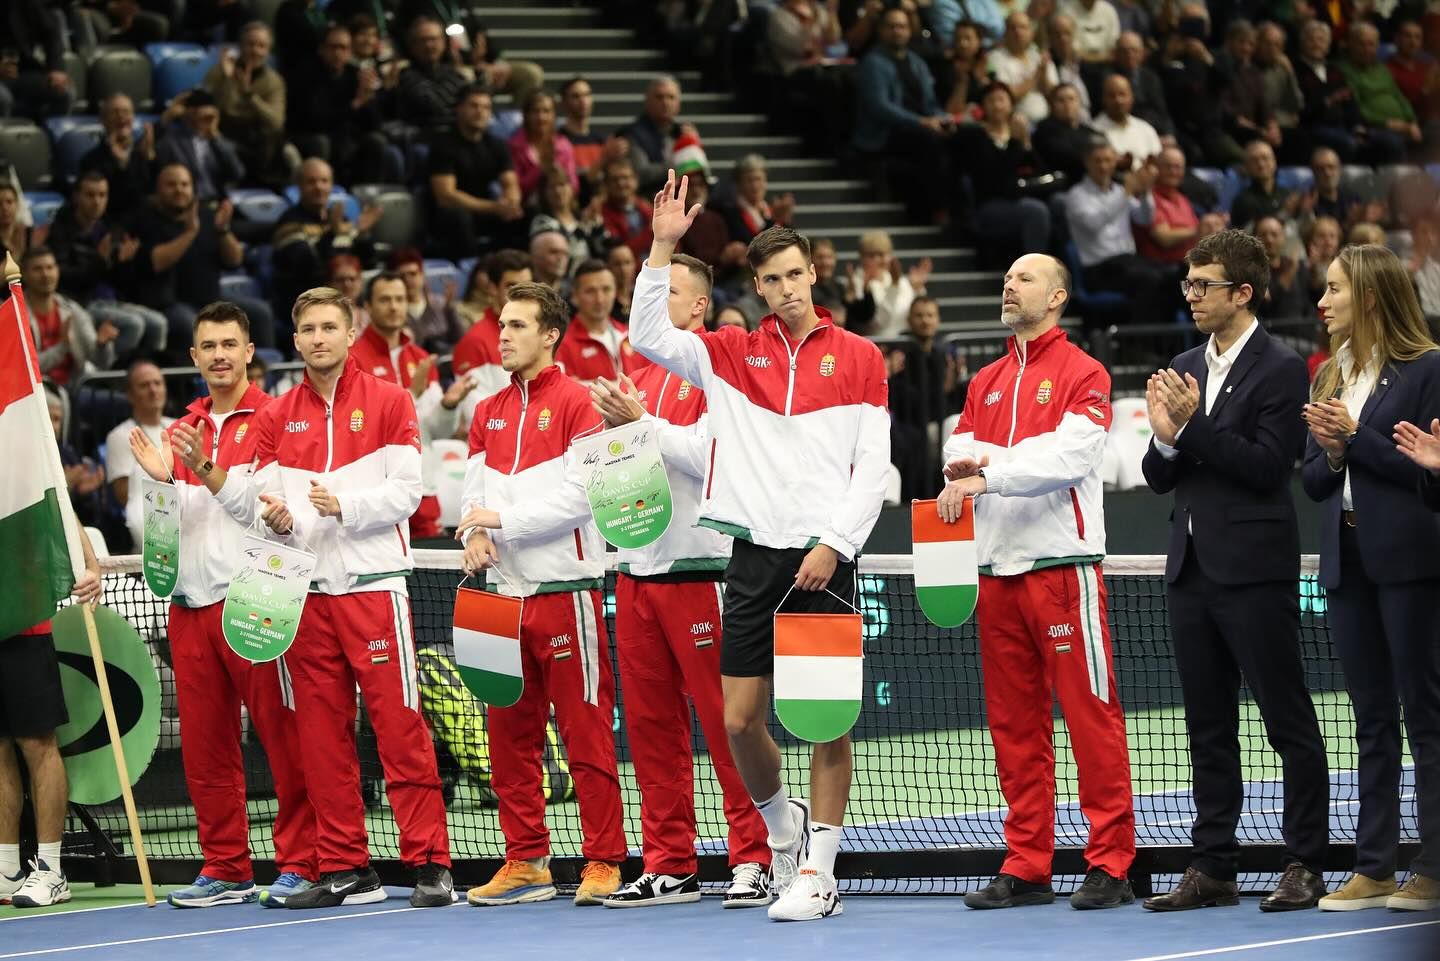 Mindig örül, ha a Davis-kupa során a magyar színeket képviselheti